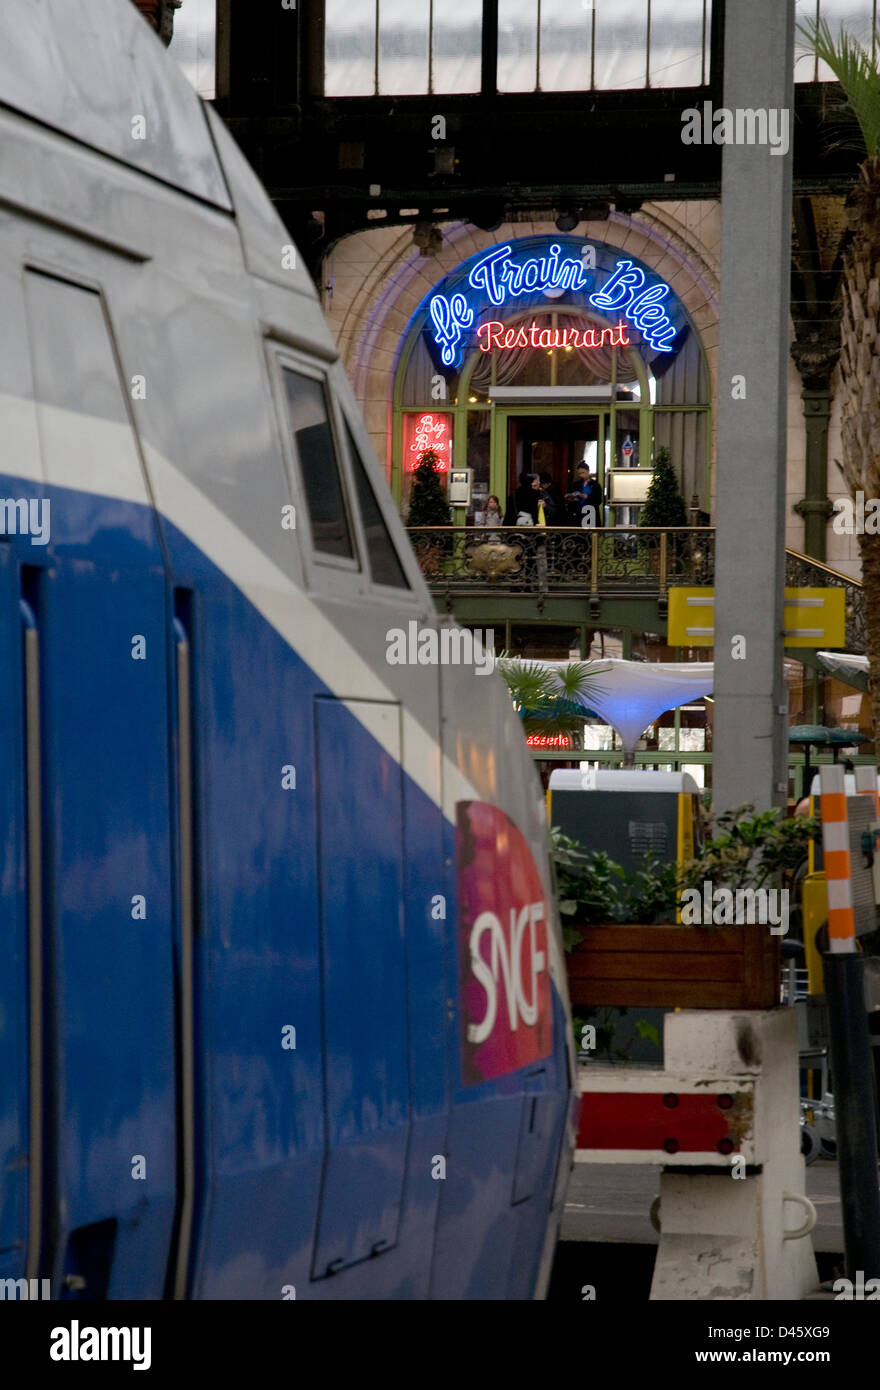 le train bleu restaurant,paris gare de lyon,france Stock Photo